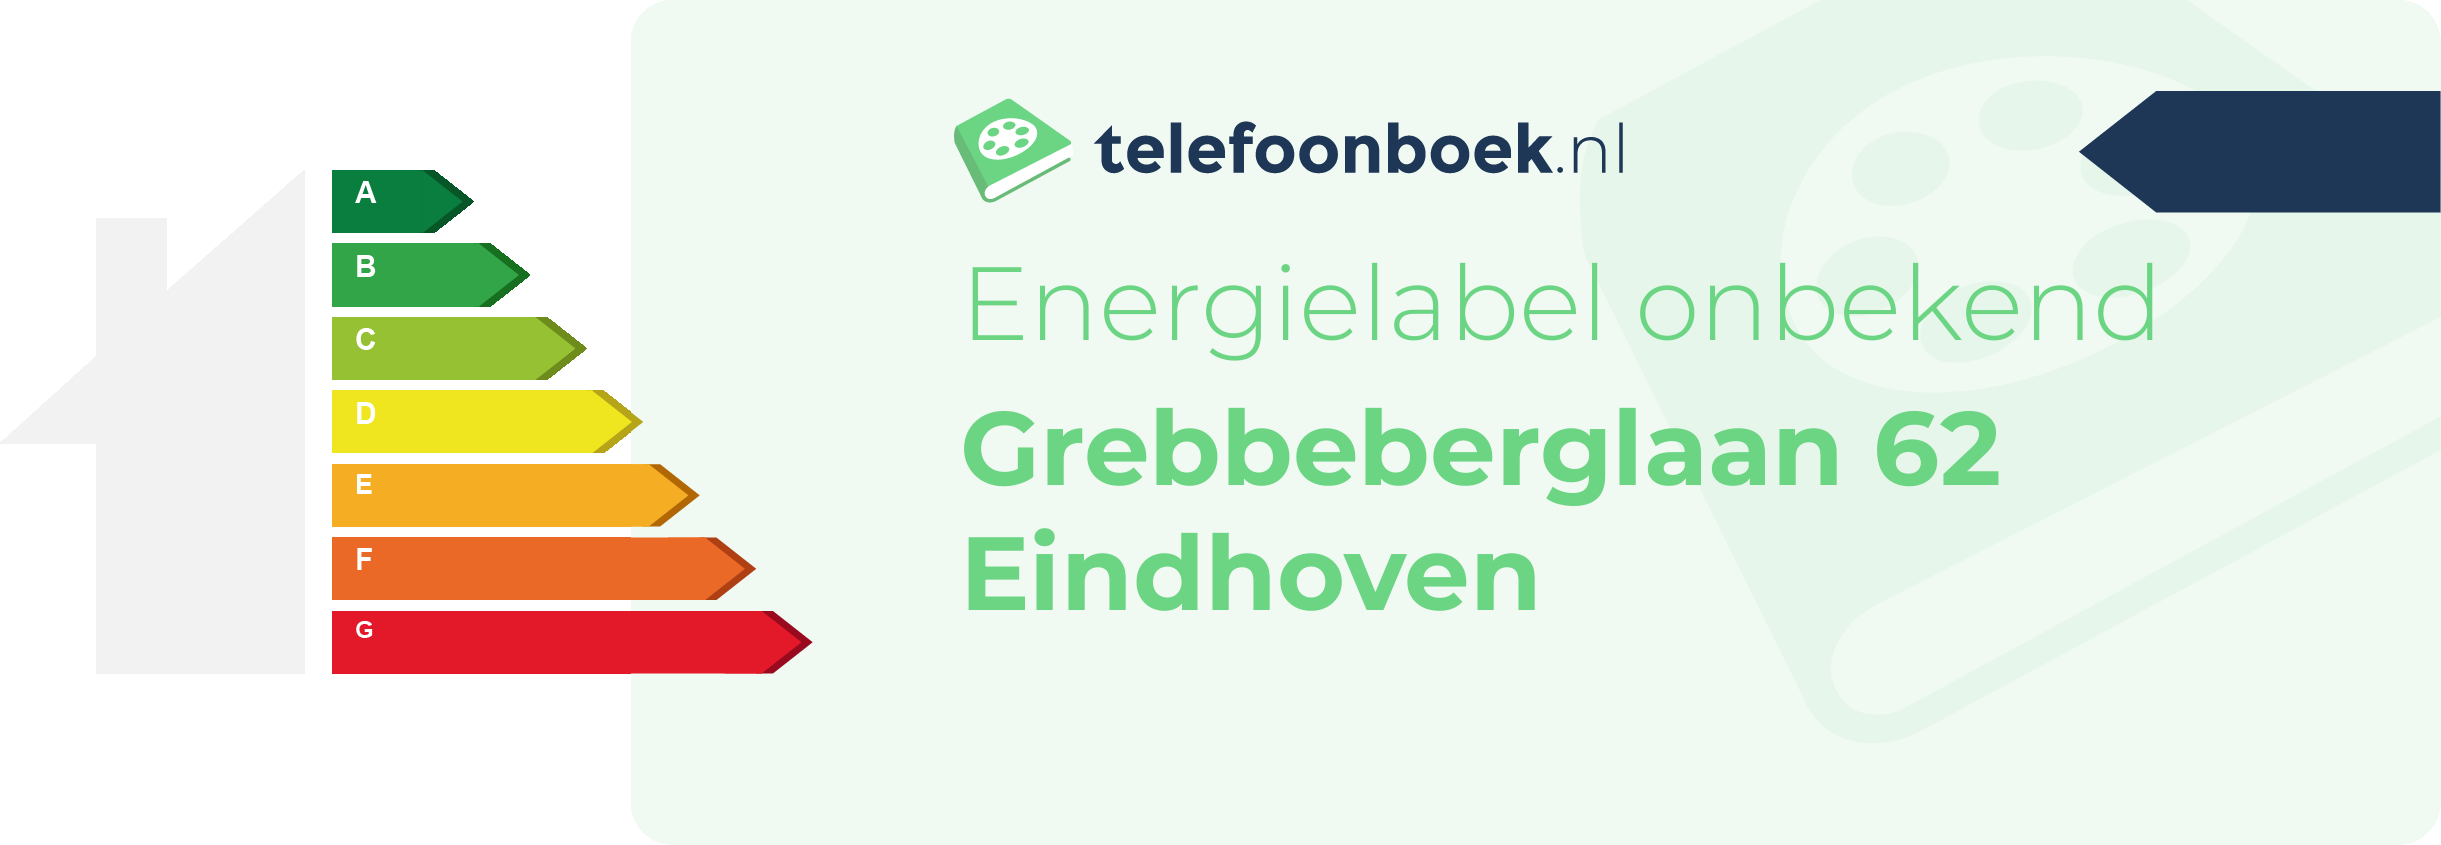 Energielabel Grebbeberglaan 62 Eindhoven